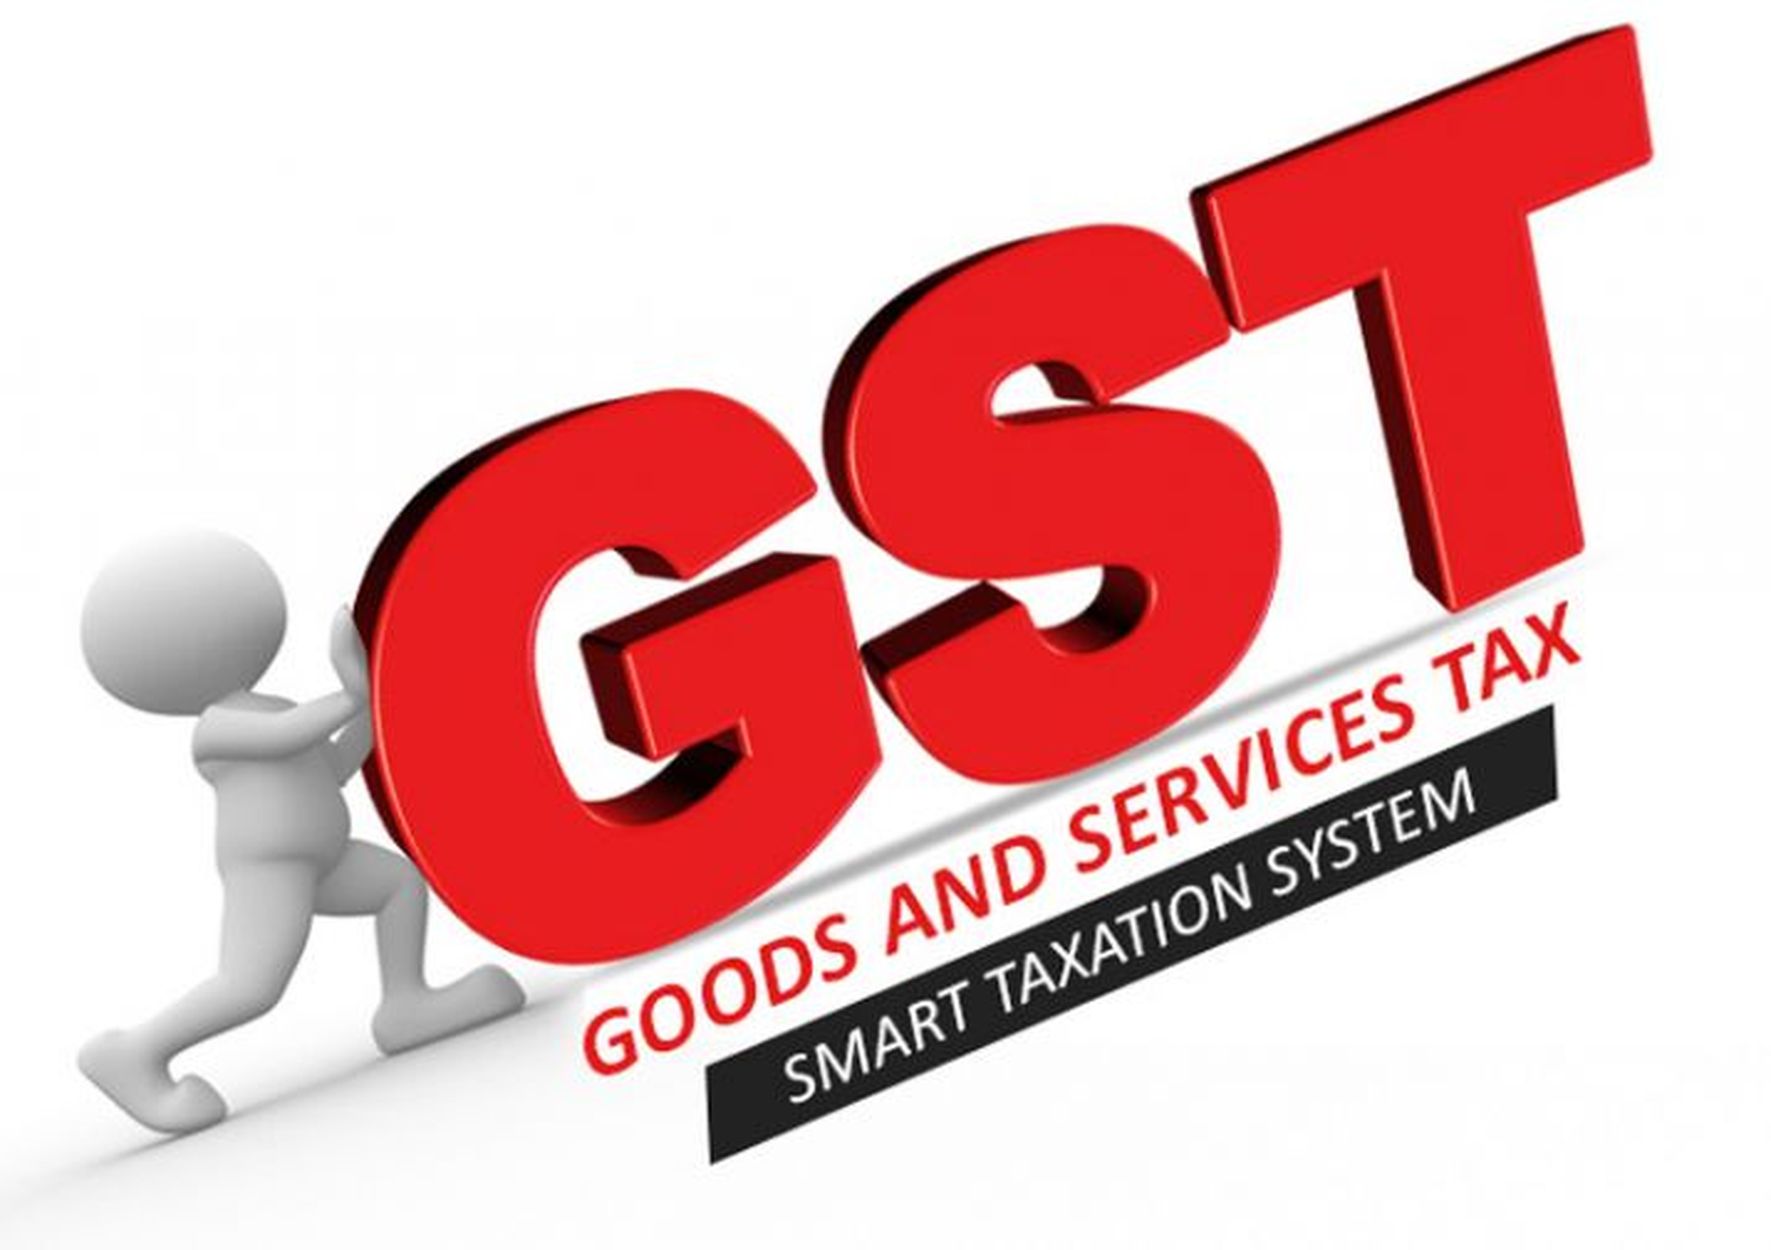 gst news- ३.३३ करोड़ रुपए की सर्विस टैक्स चोरी पकड़ी, कंपनी डायरेक्टर गिरफ्तार